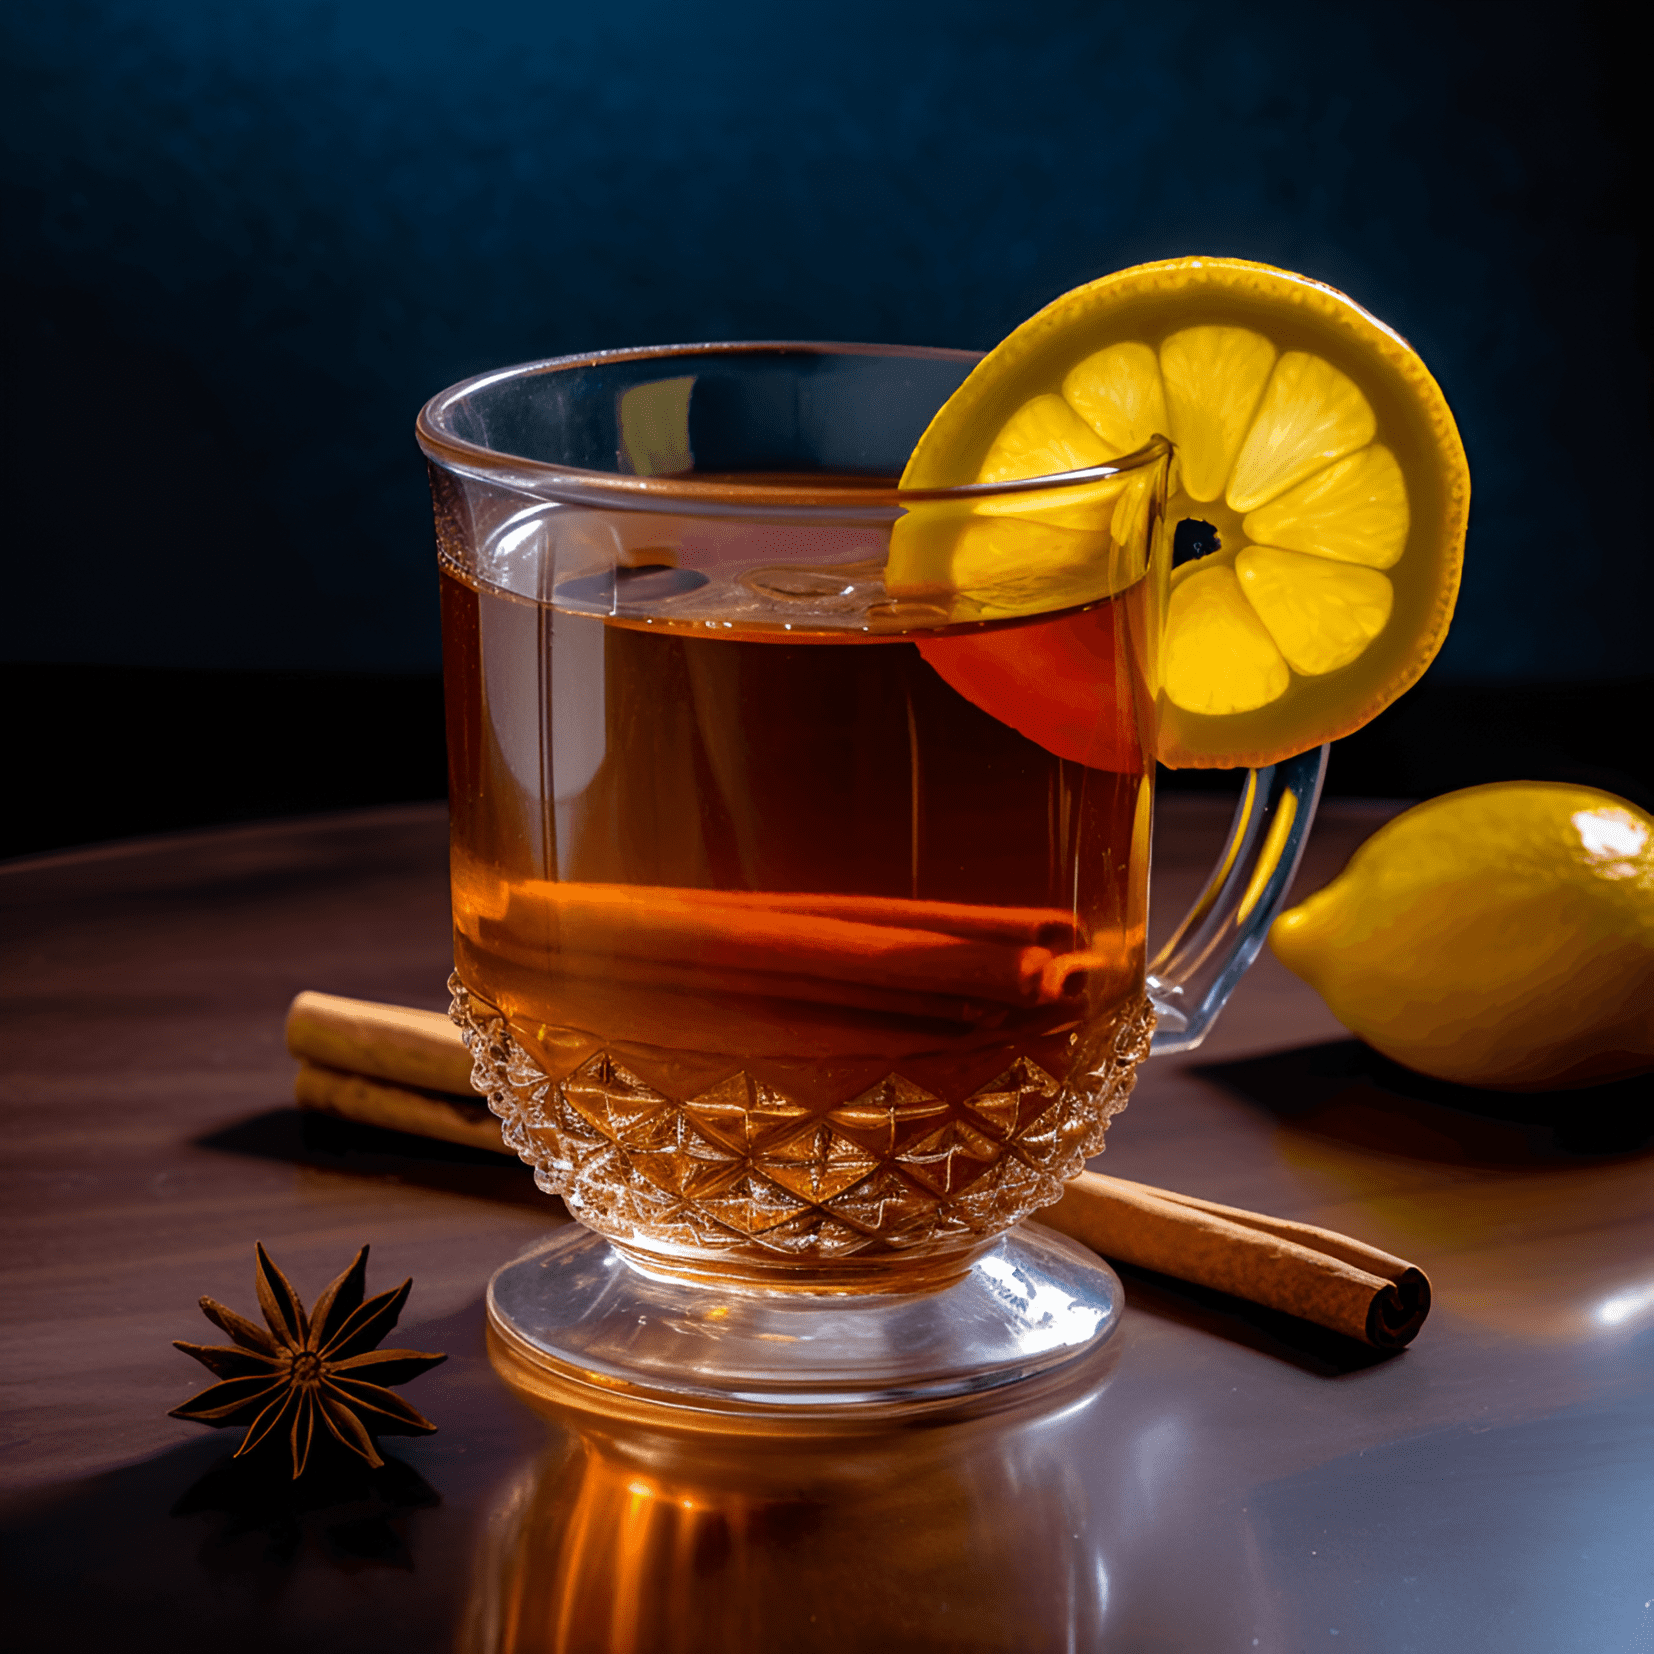 Gunfire Cóctel Receta - El cóctel Gunfire tiene un sabor cálido, robusto y ligeramente dulce. El té negro fuerte proporciona una base audaz y terrosa, mientras que el ron agrega una dulzura rica y suave. La combinación crea una bebida reconfortante y vigorizante.